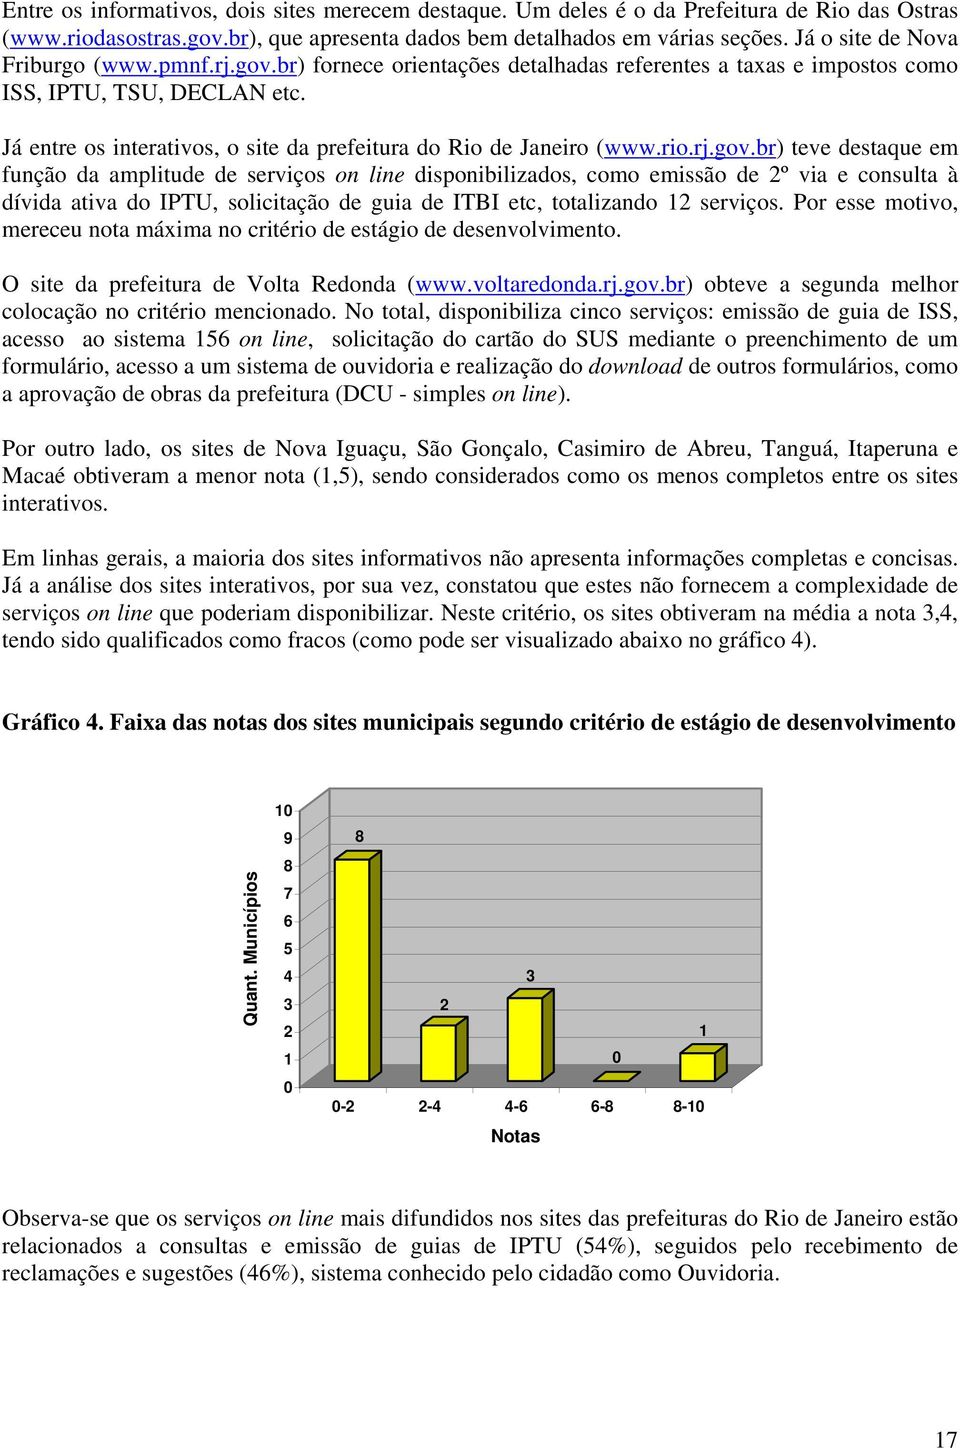 Já entre os interativos, o site da prefeitura do Rio de Janeiro (www.rio.rj.gov.